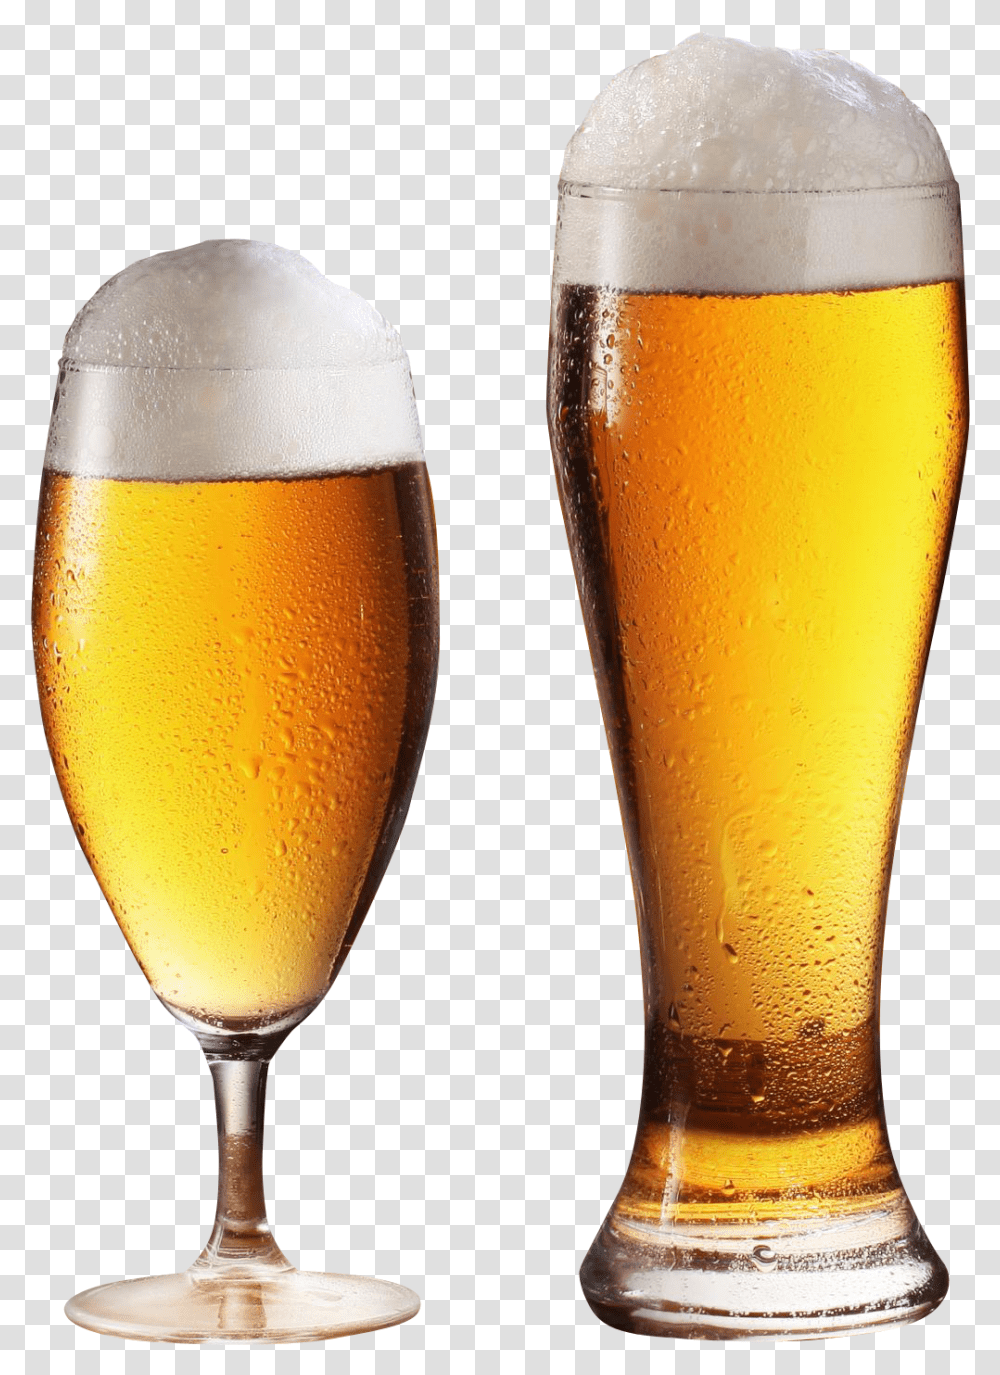 Beer Glass Image Beer Glass, Alcohol, Beverage, Drink, Lager Transparent Png